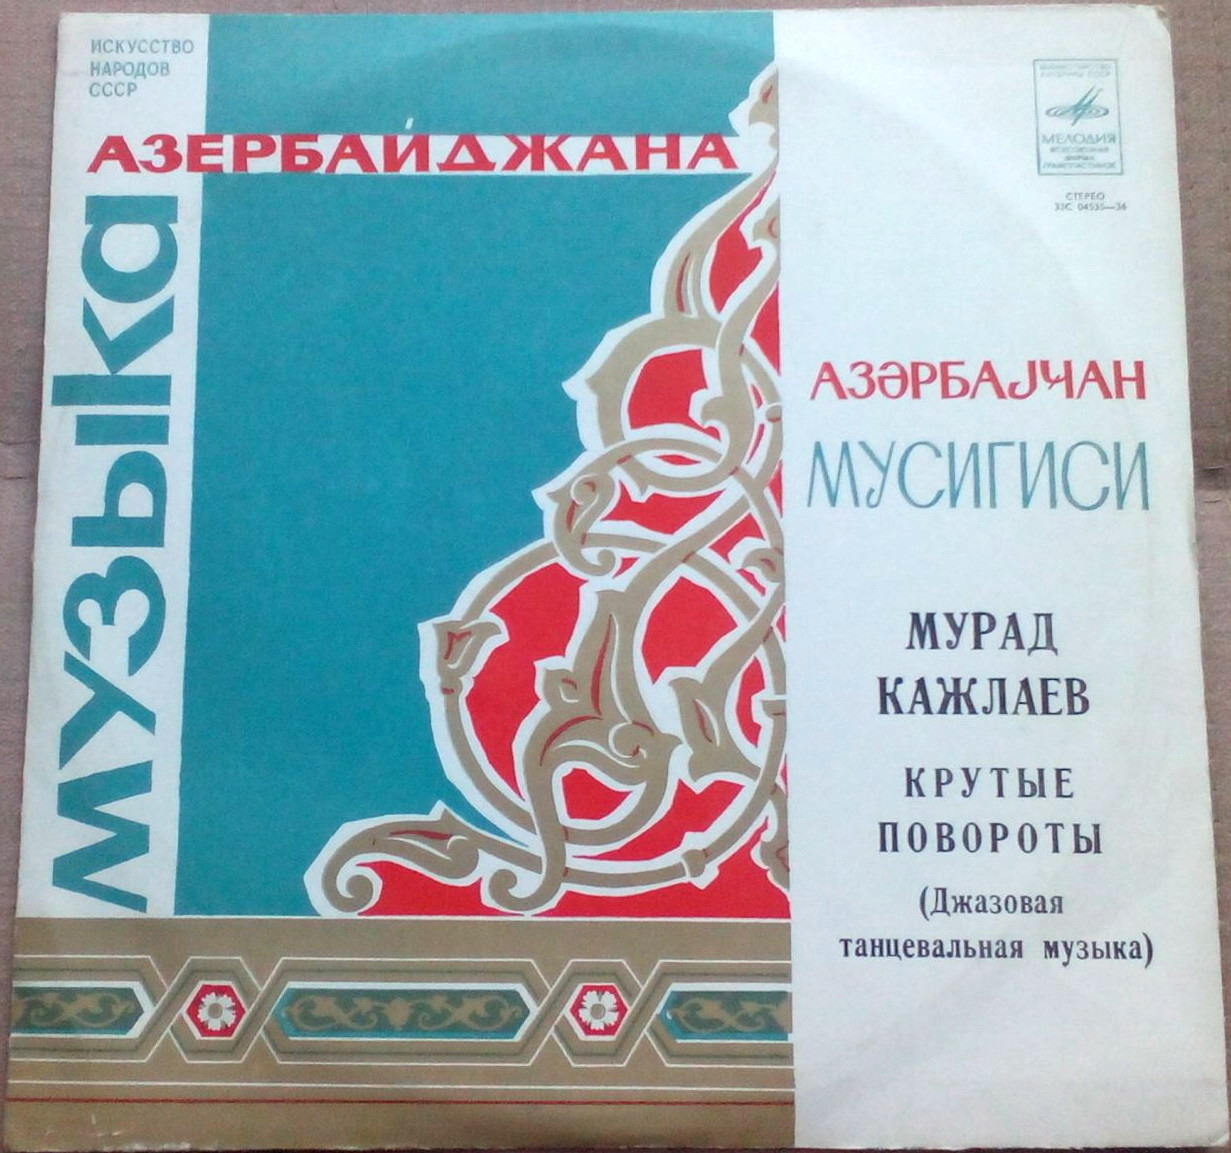 Мурад Кажлаев  – «КРУТЫЕ ПОВОРОТЫ» (Джазовая танцевальная музыка)